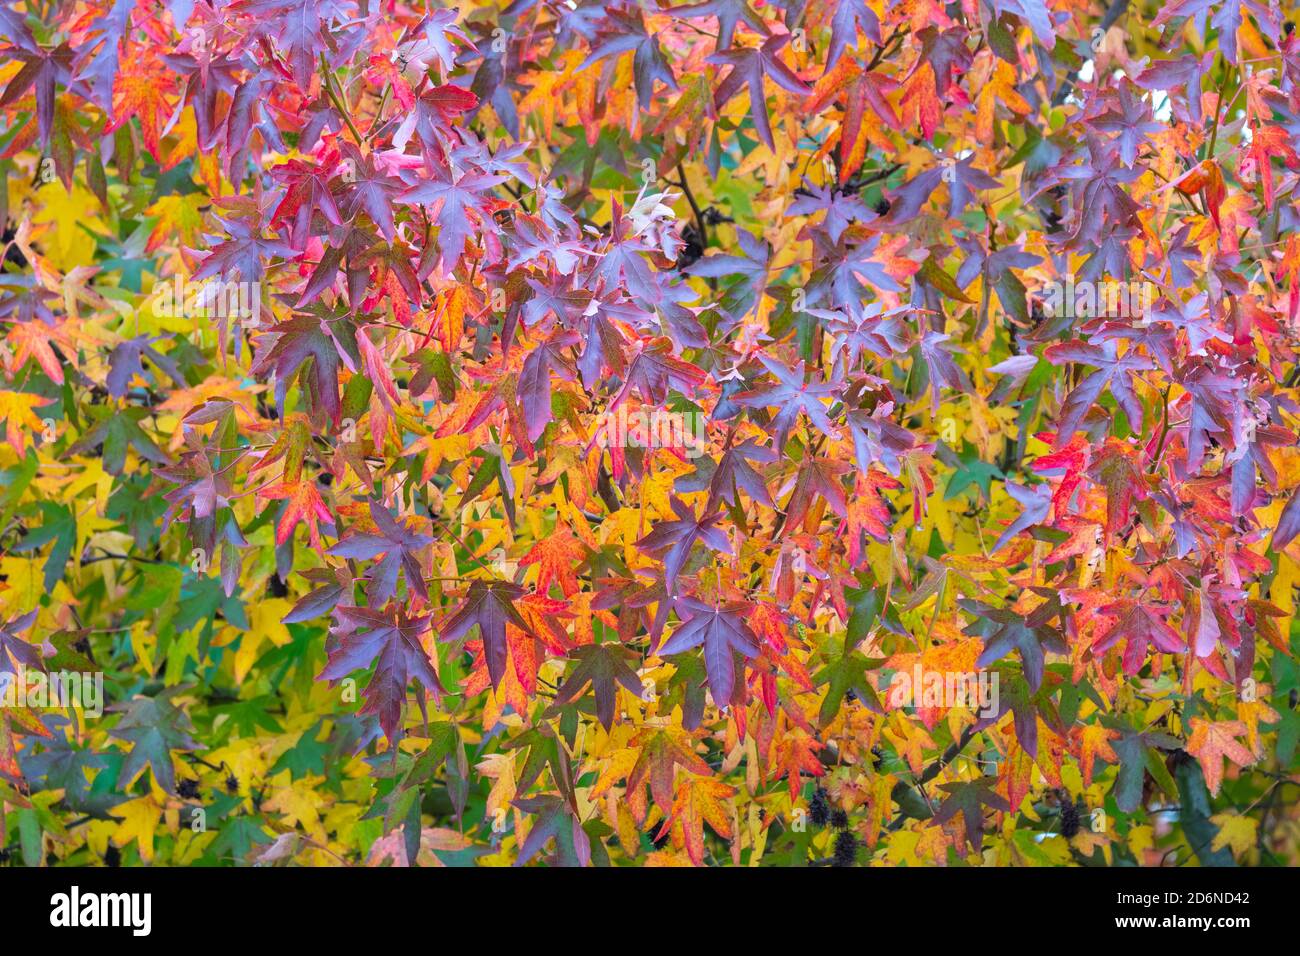 Cierre de hojas en un árbol a medida que los colores se convierten en otoño. Concepto de otoño y estaciones cambiantes. Foto de stock